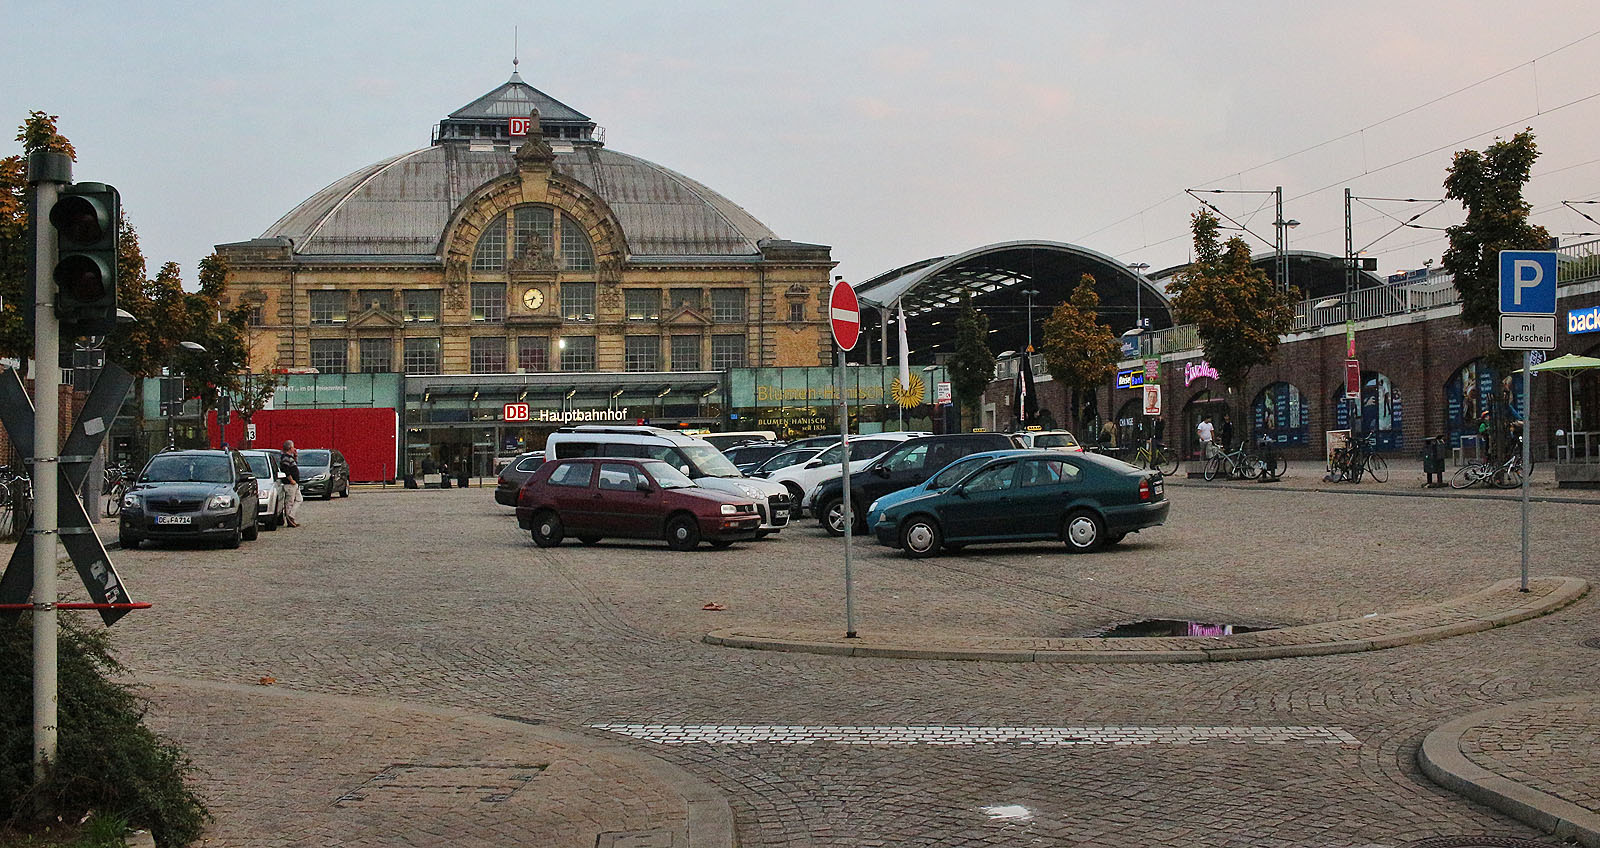 Halle (Saale) Hauptbahnhof (žst)